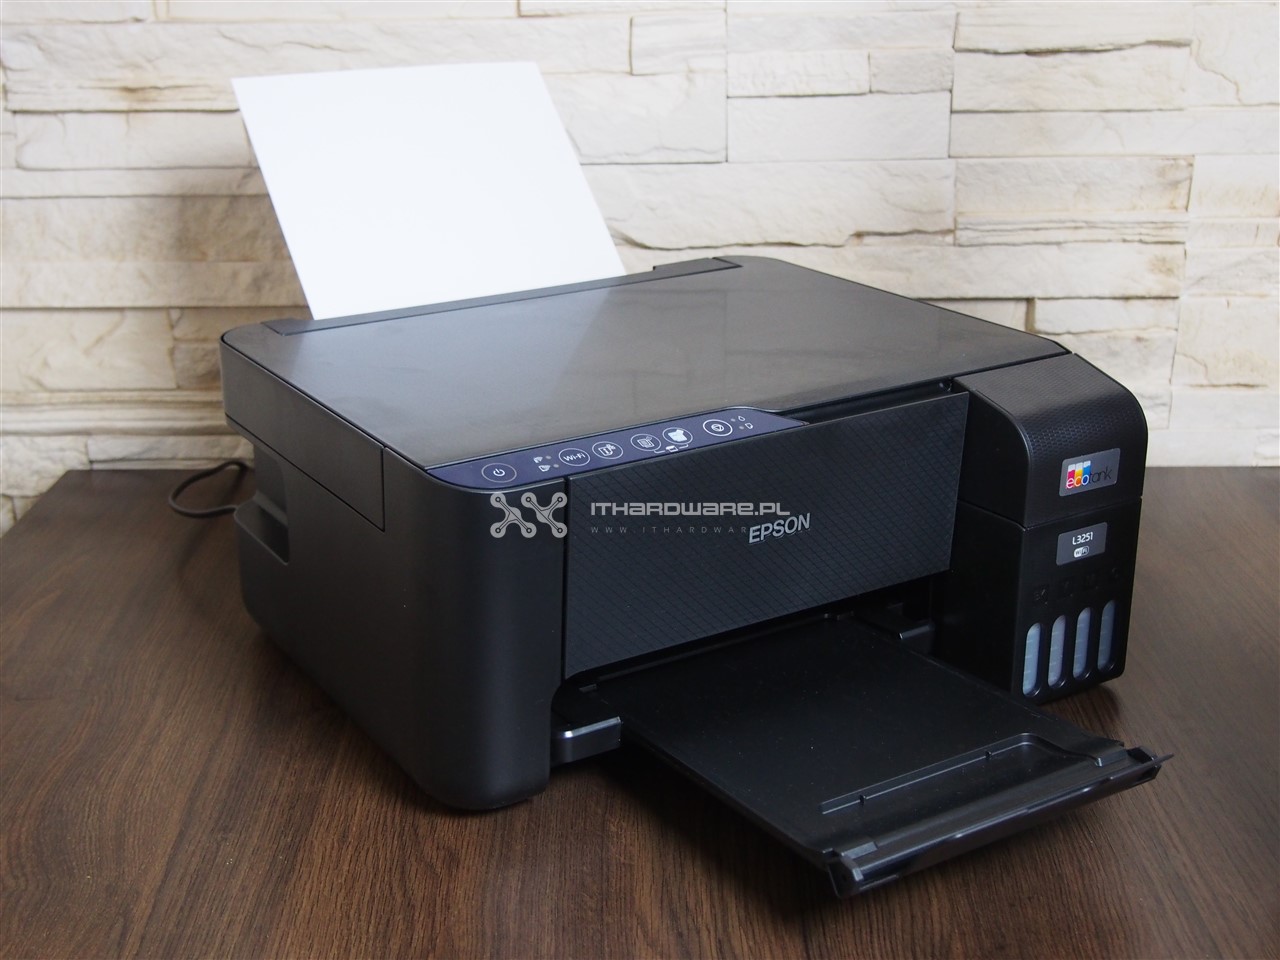 Epson EcoTank L3251 - test ultrawydajnej drukarki atramentowej. Czy warto?